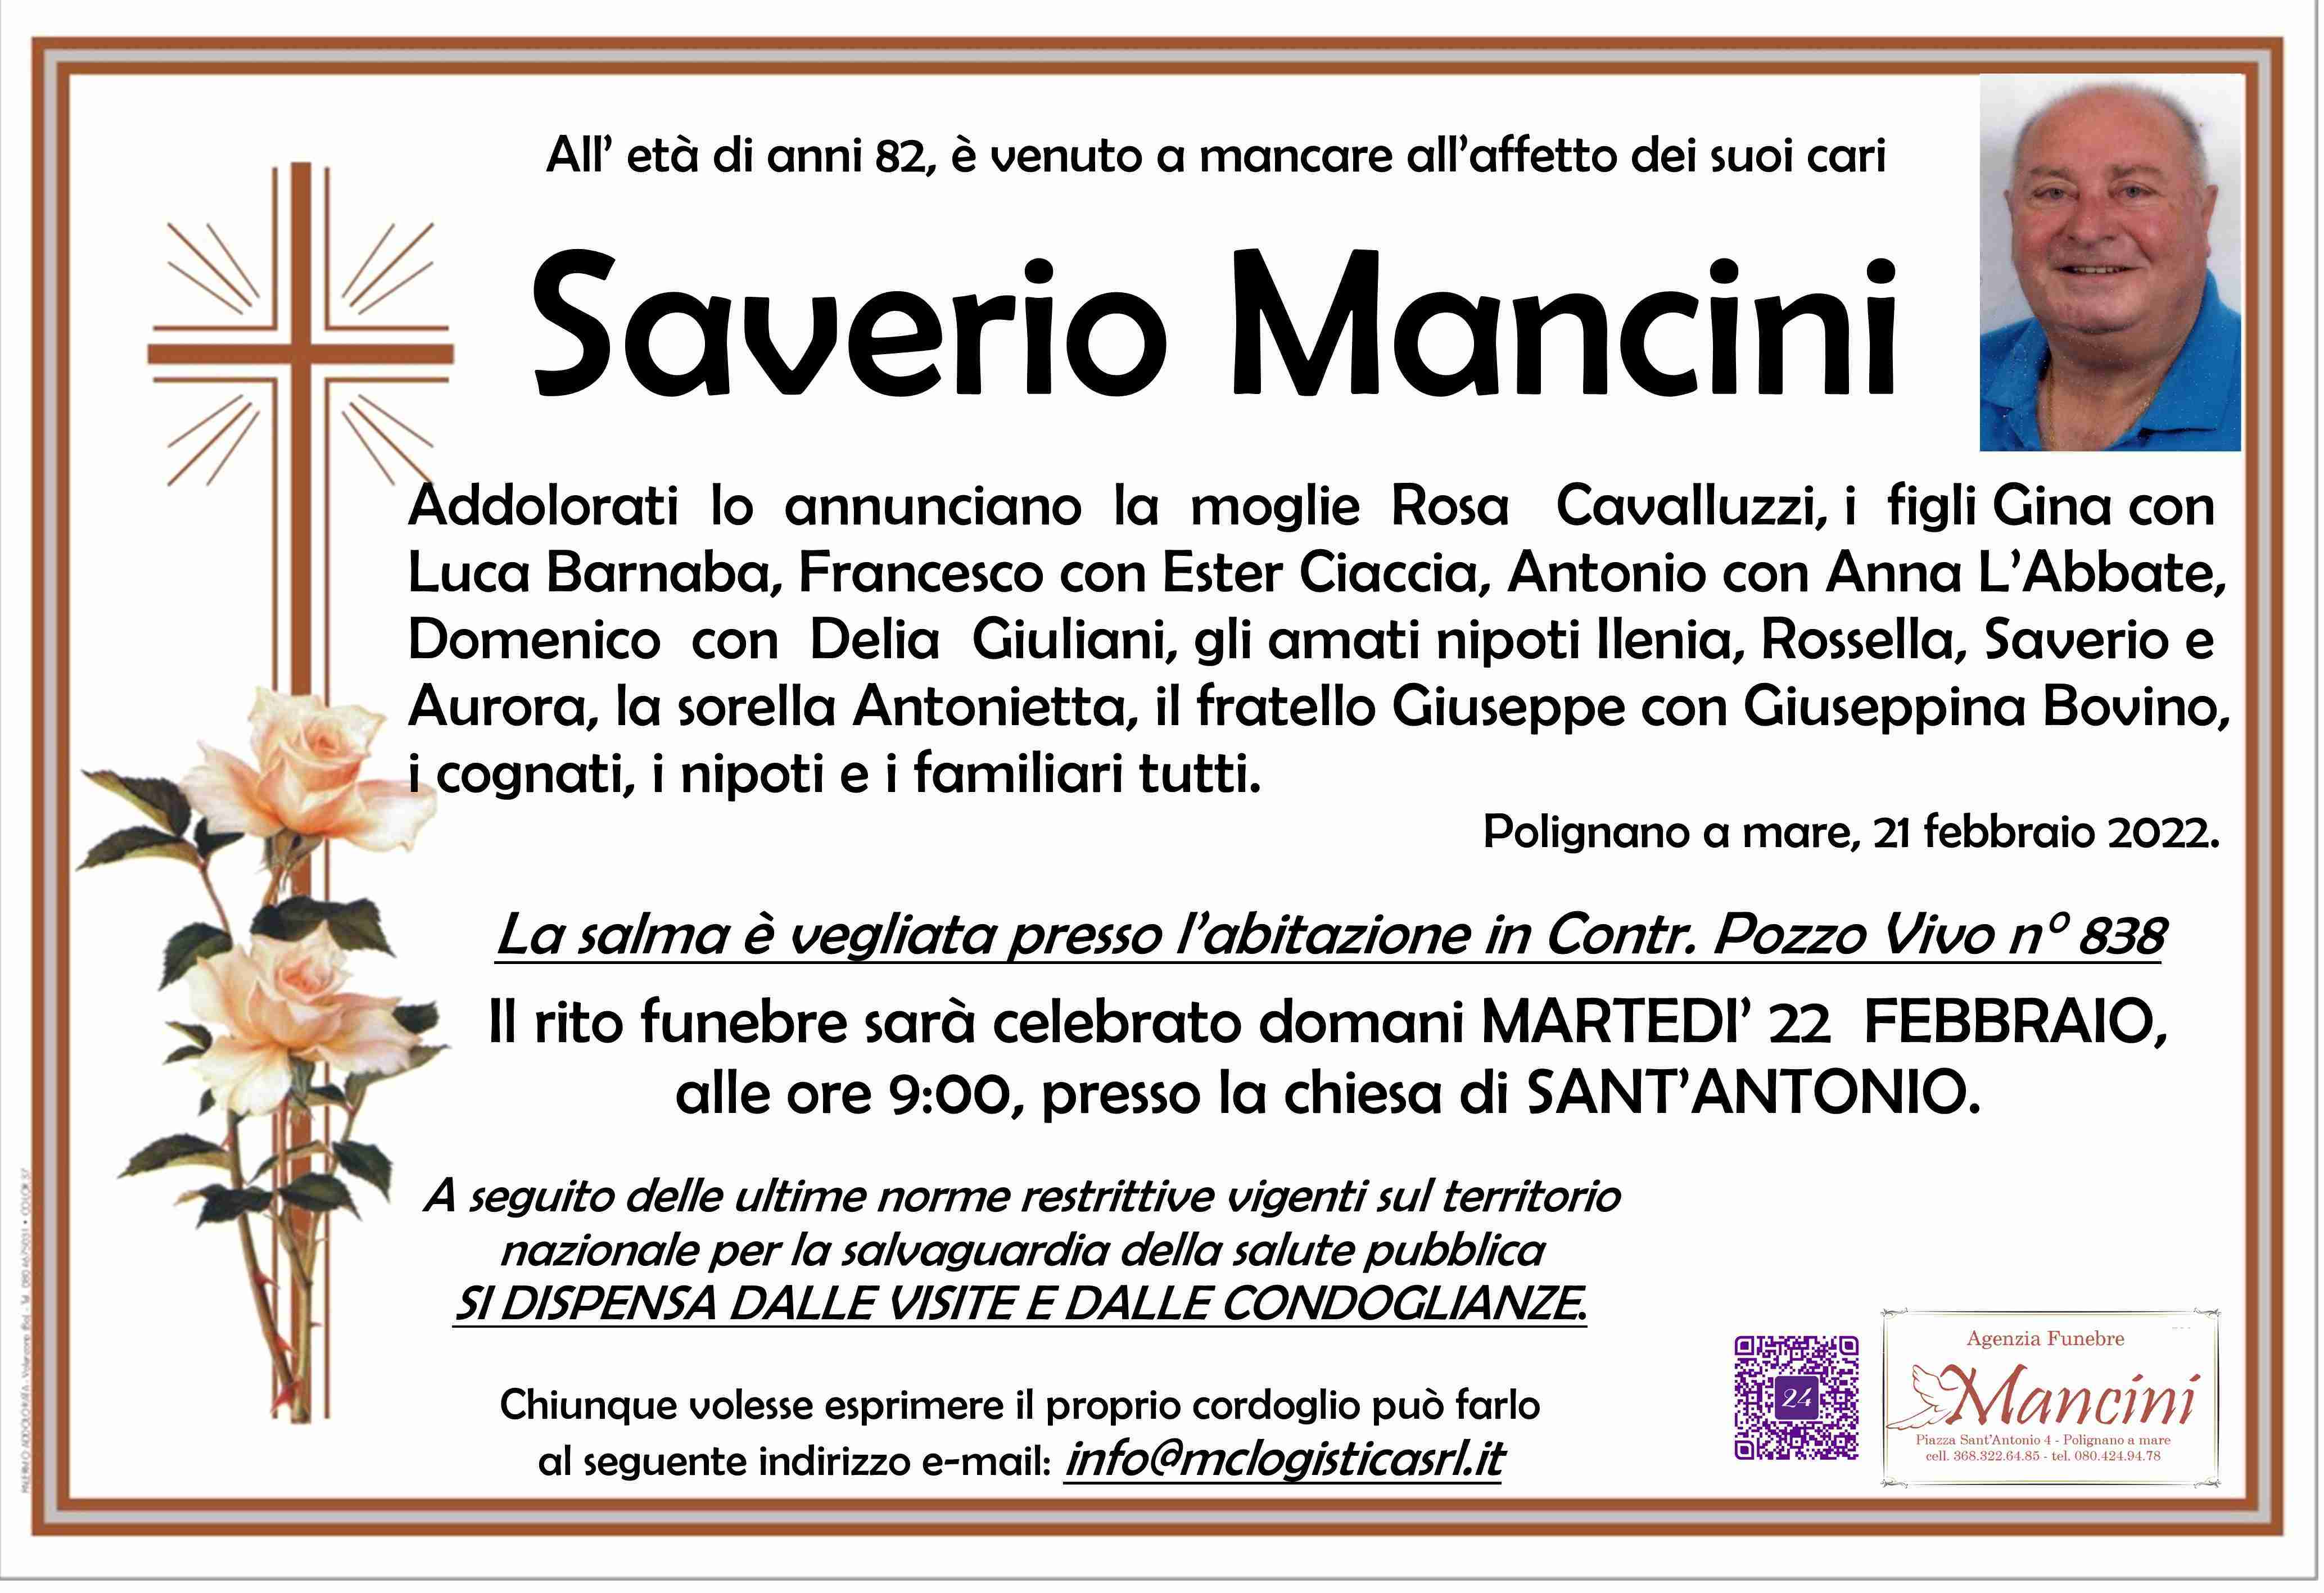 Saverio Mancini